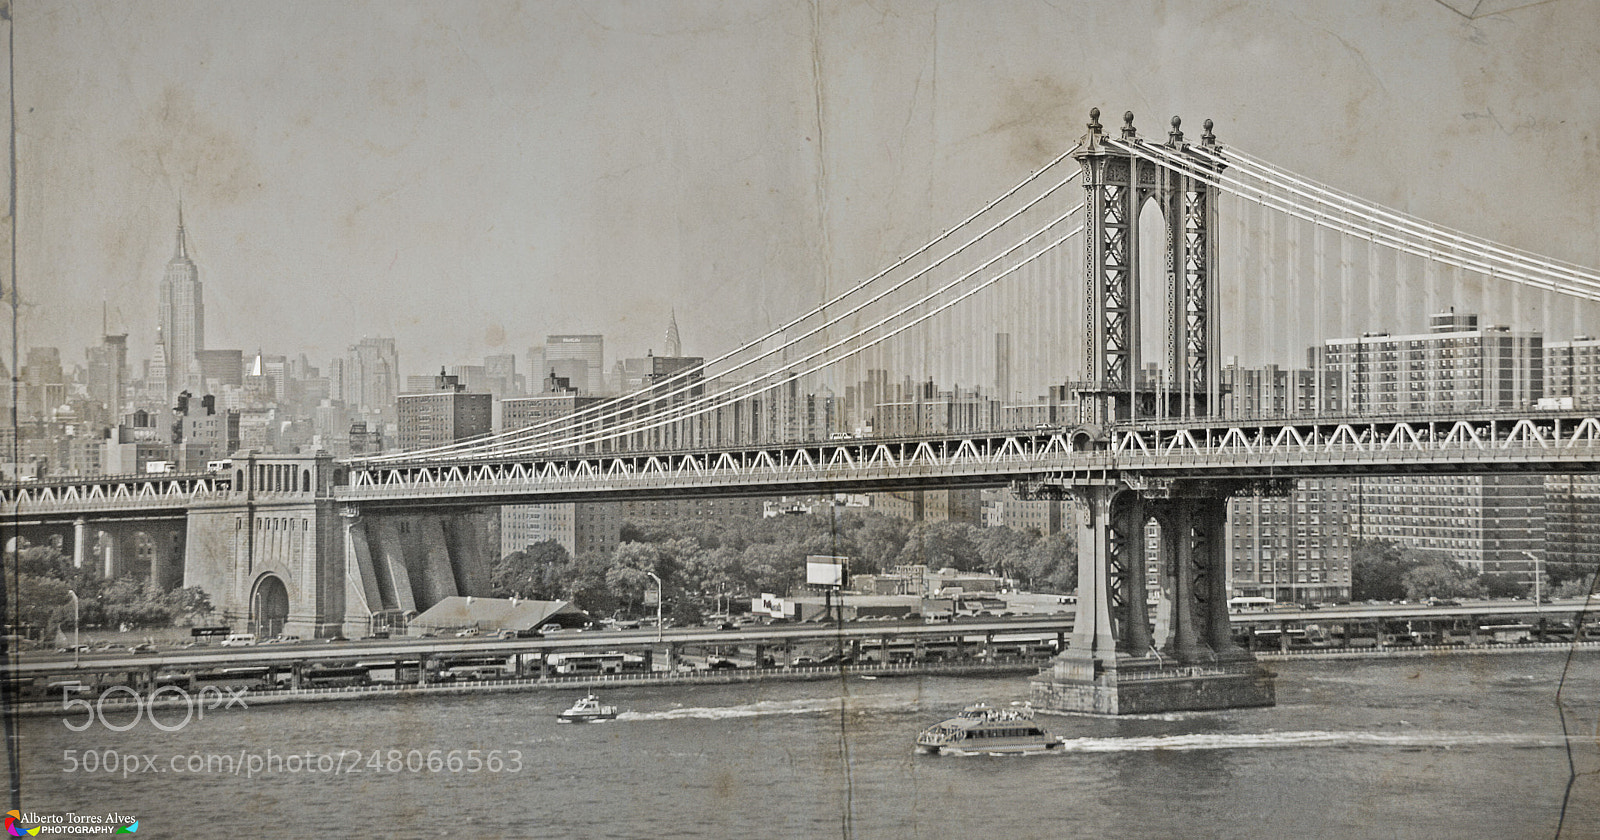 Canon EOS 400D (EOS Digital Rebel XTi / EOS Kiss Digital X) sample photo. Manhattan bridge photography